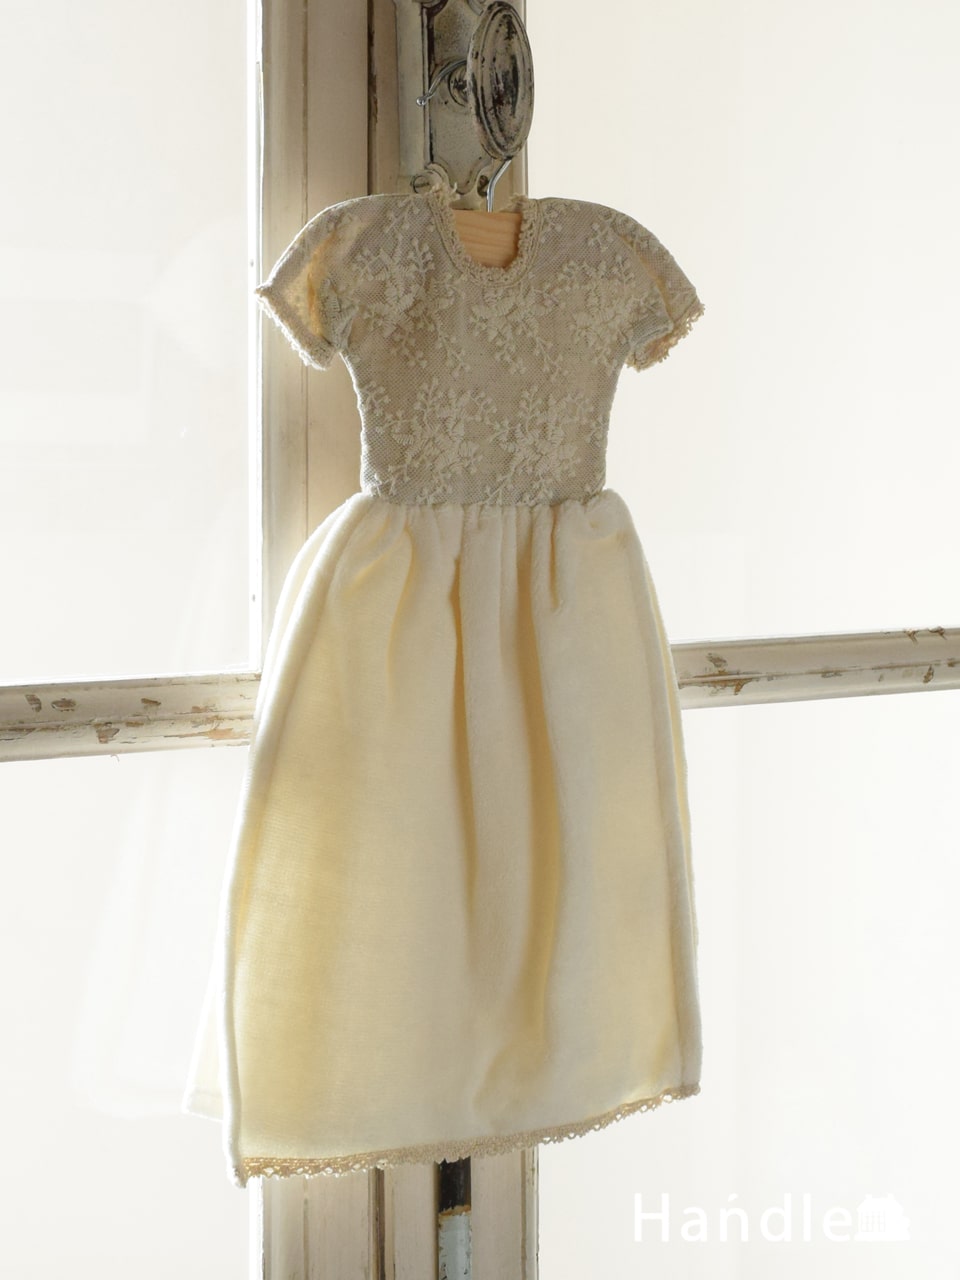 ドレスの形をした可愛いタオル、ハンガー付きのドレスタオル（cotton flora） (n20-167)